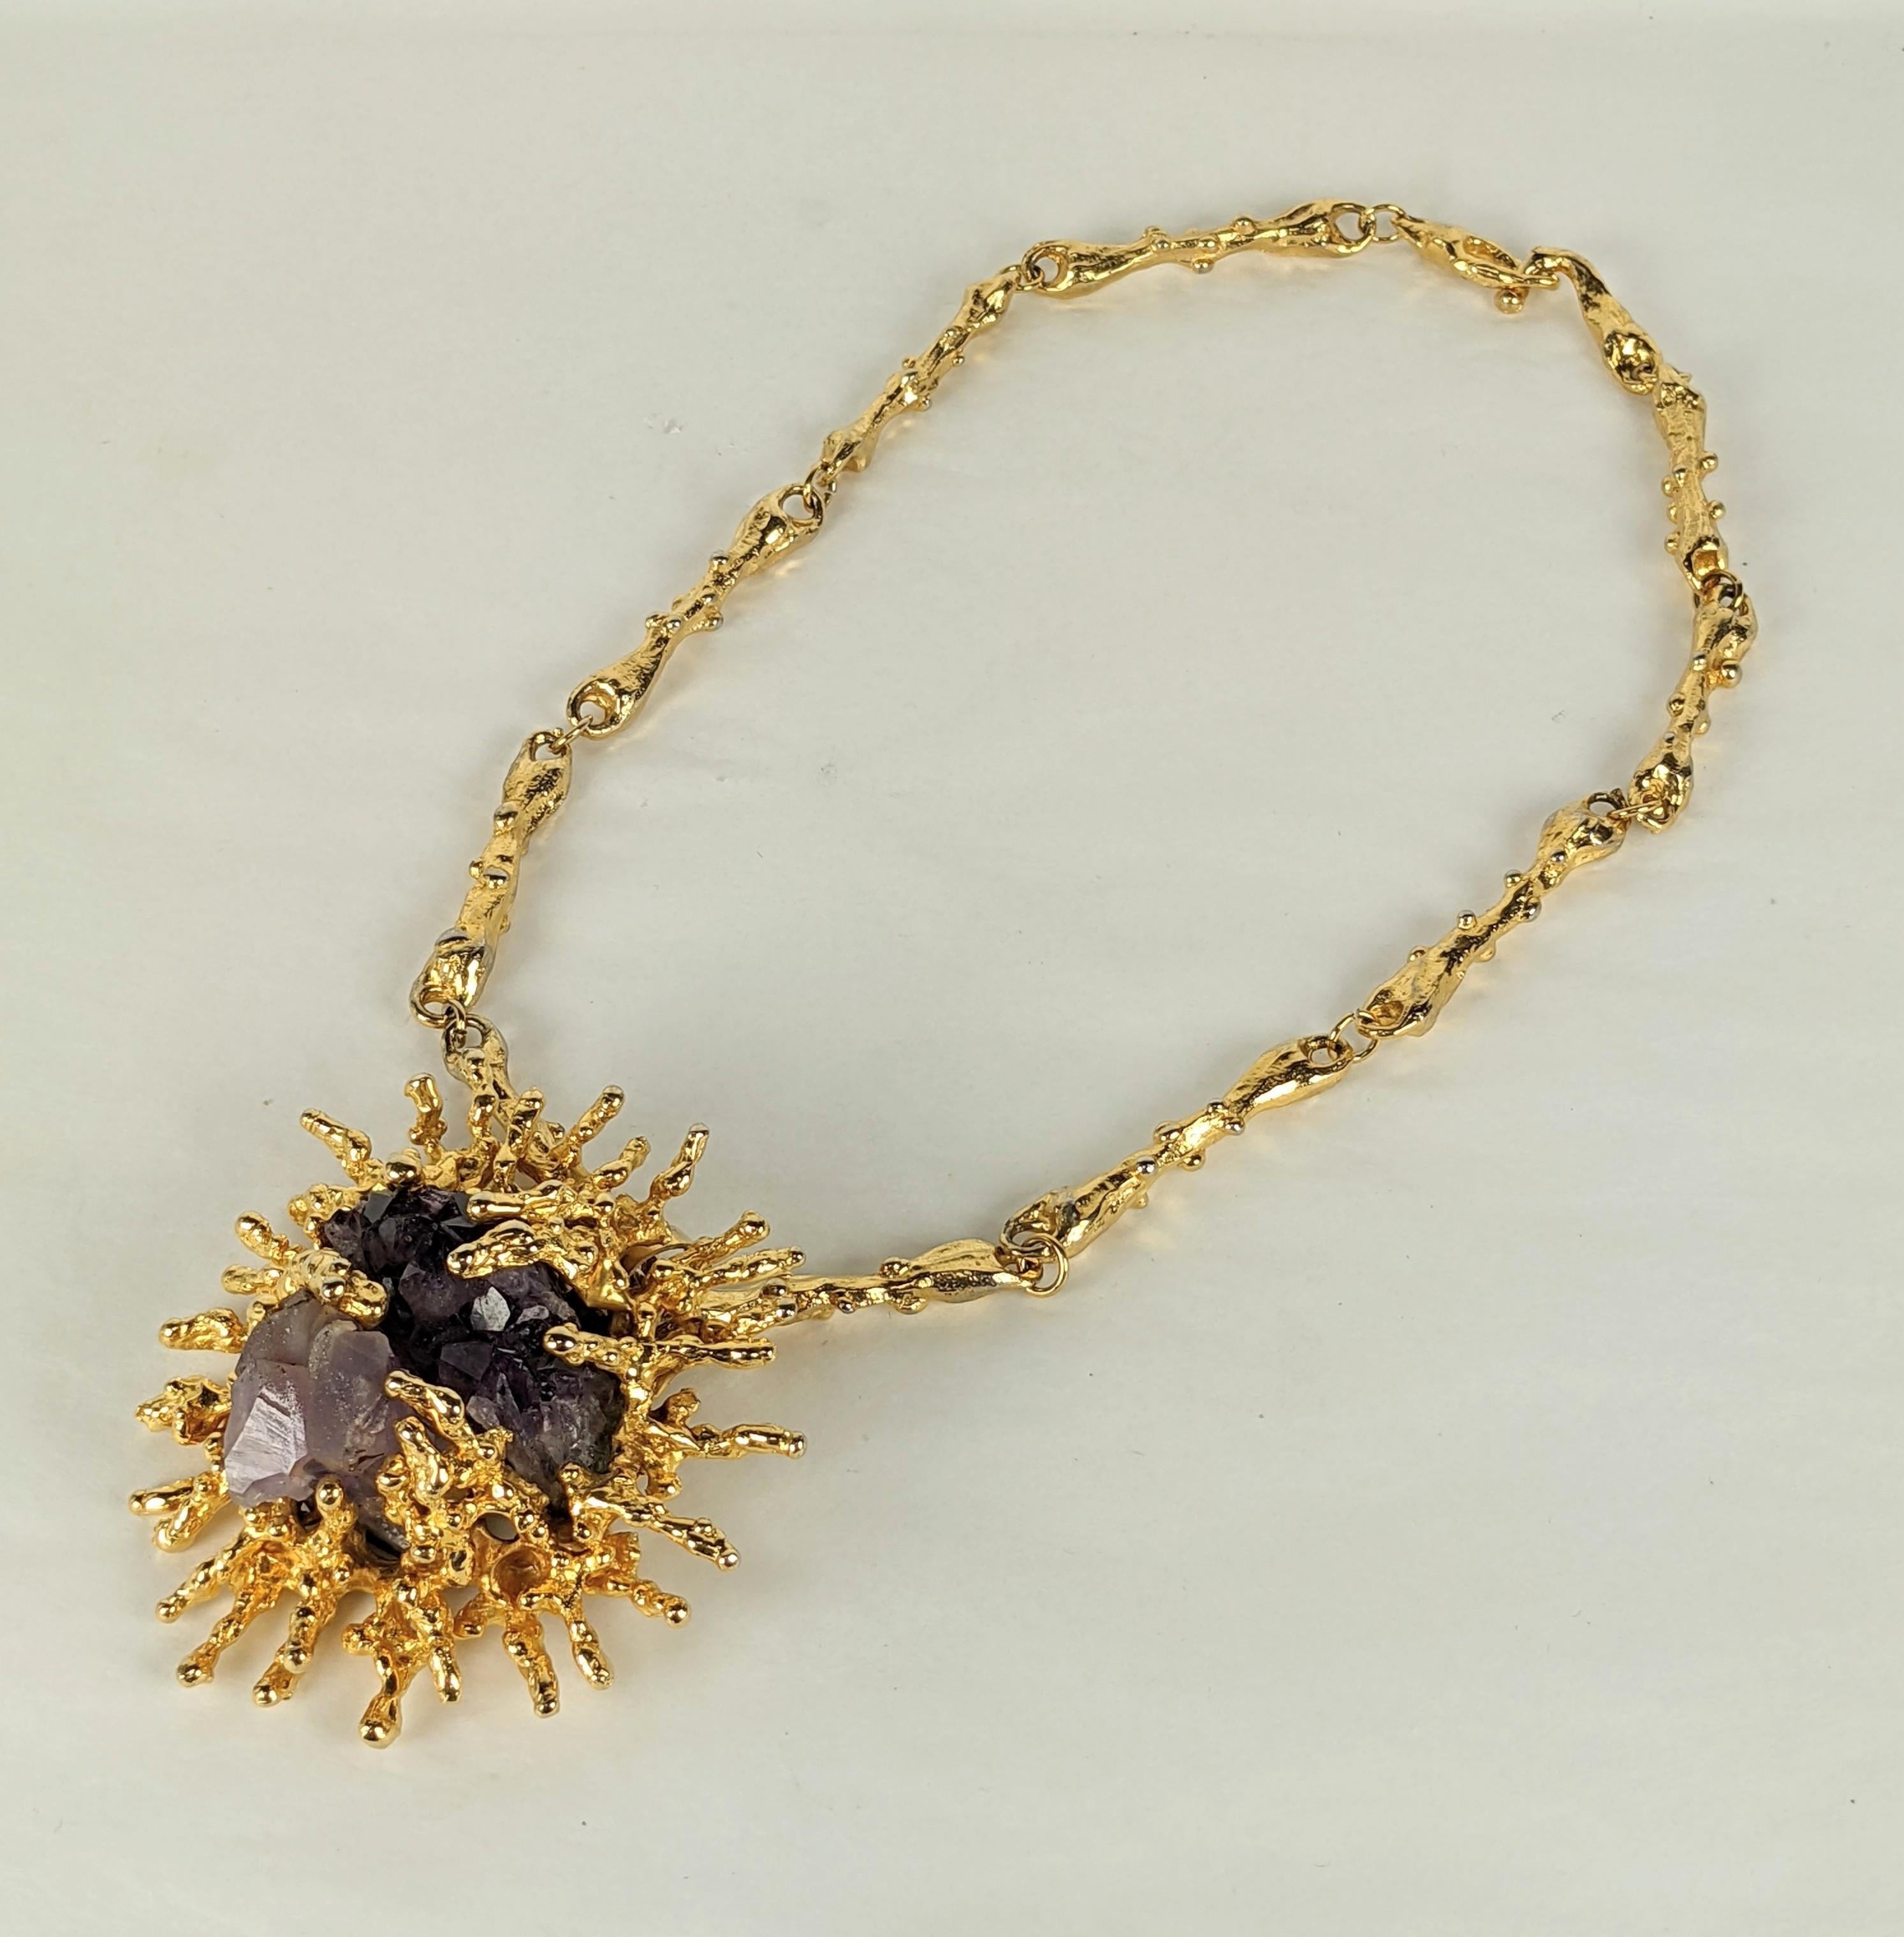  Brutalistische Halskette mit skulpturalem Anhänger von Panetta. Natürliche Amythest-Kristalle aus Natur sind von skulpturalen, korallenförmigen Formationen aus Goldmetall umgeben. Massives Maßstab mit originaler abstrakter